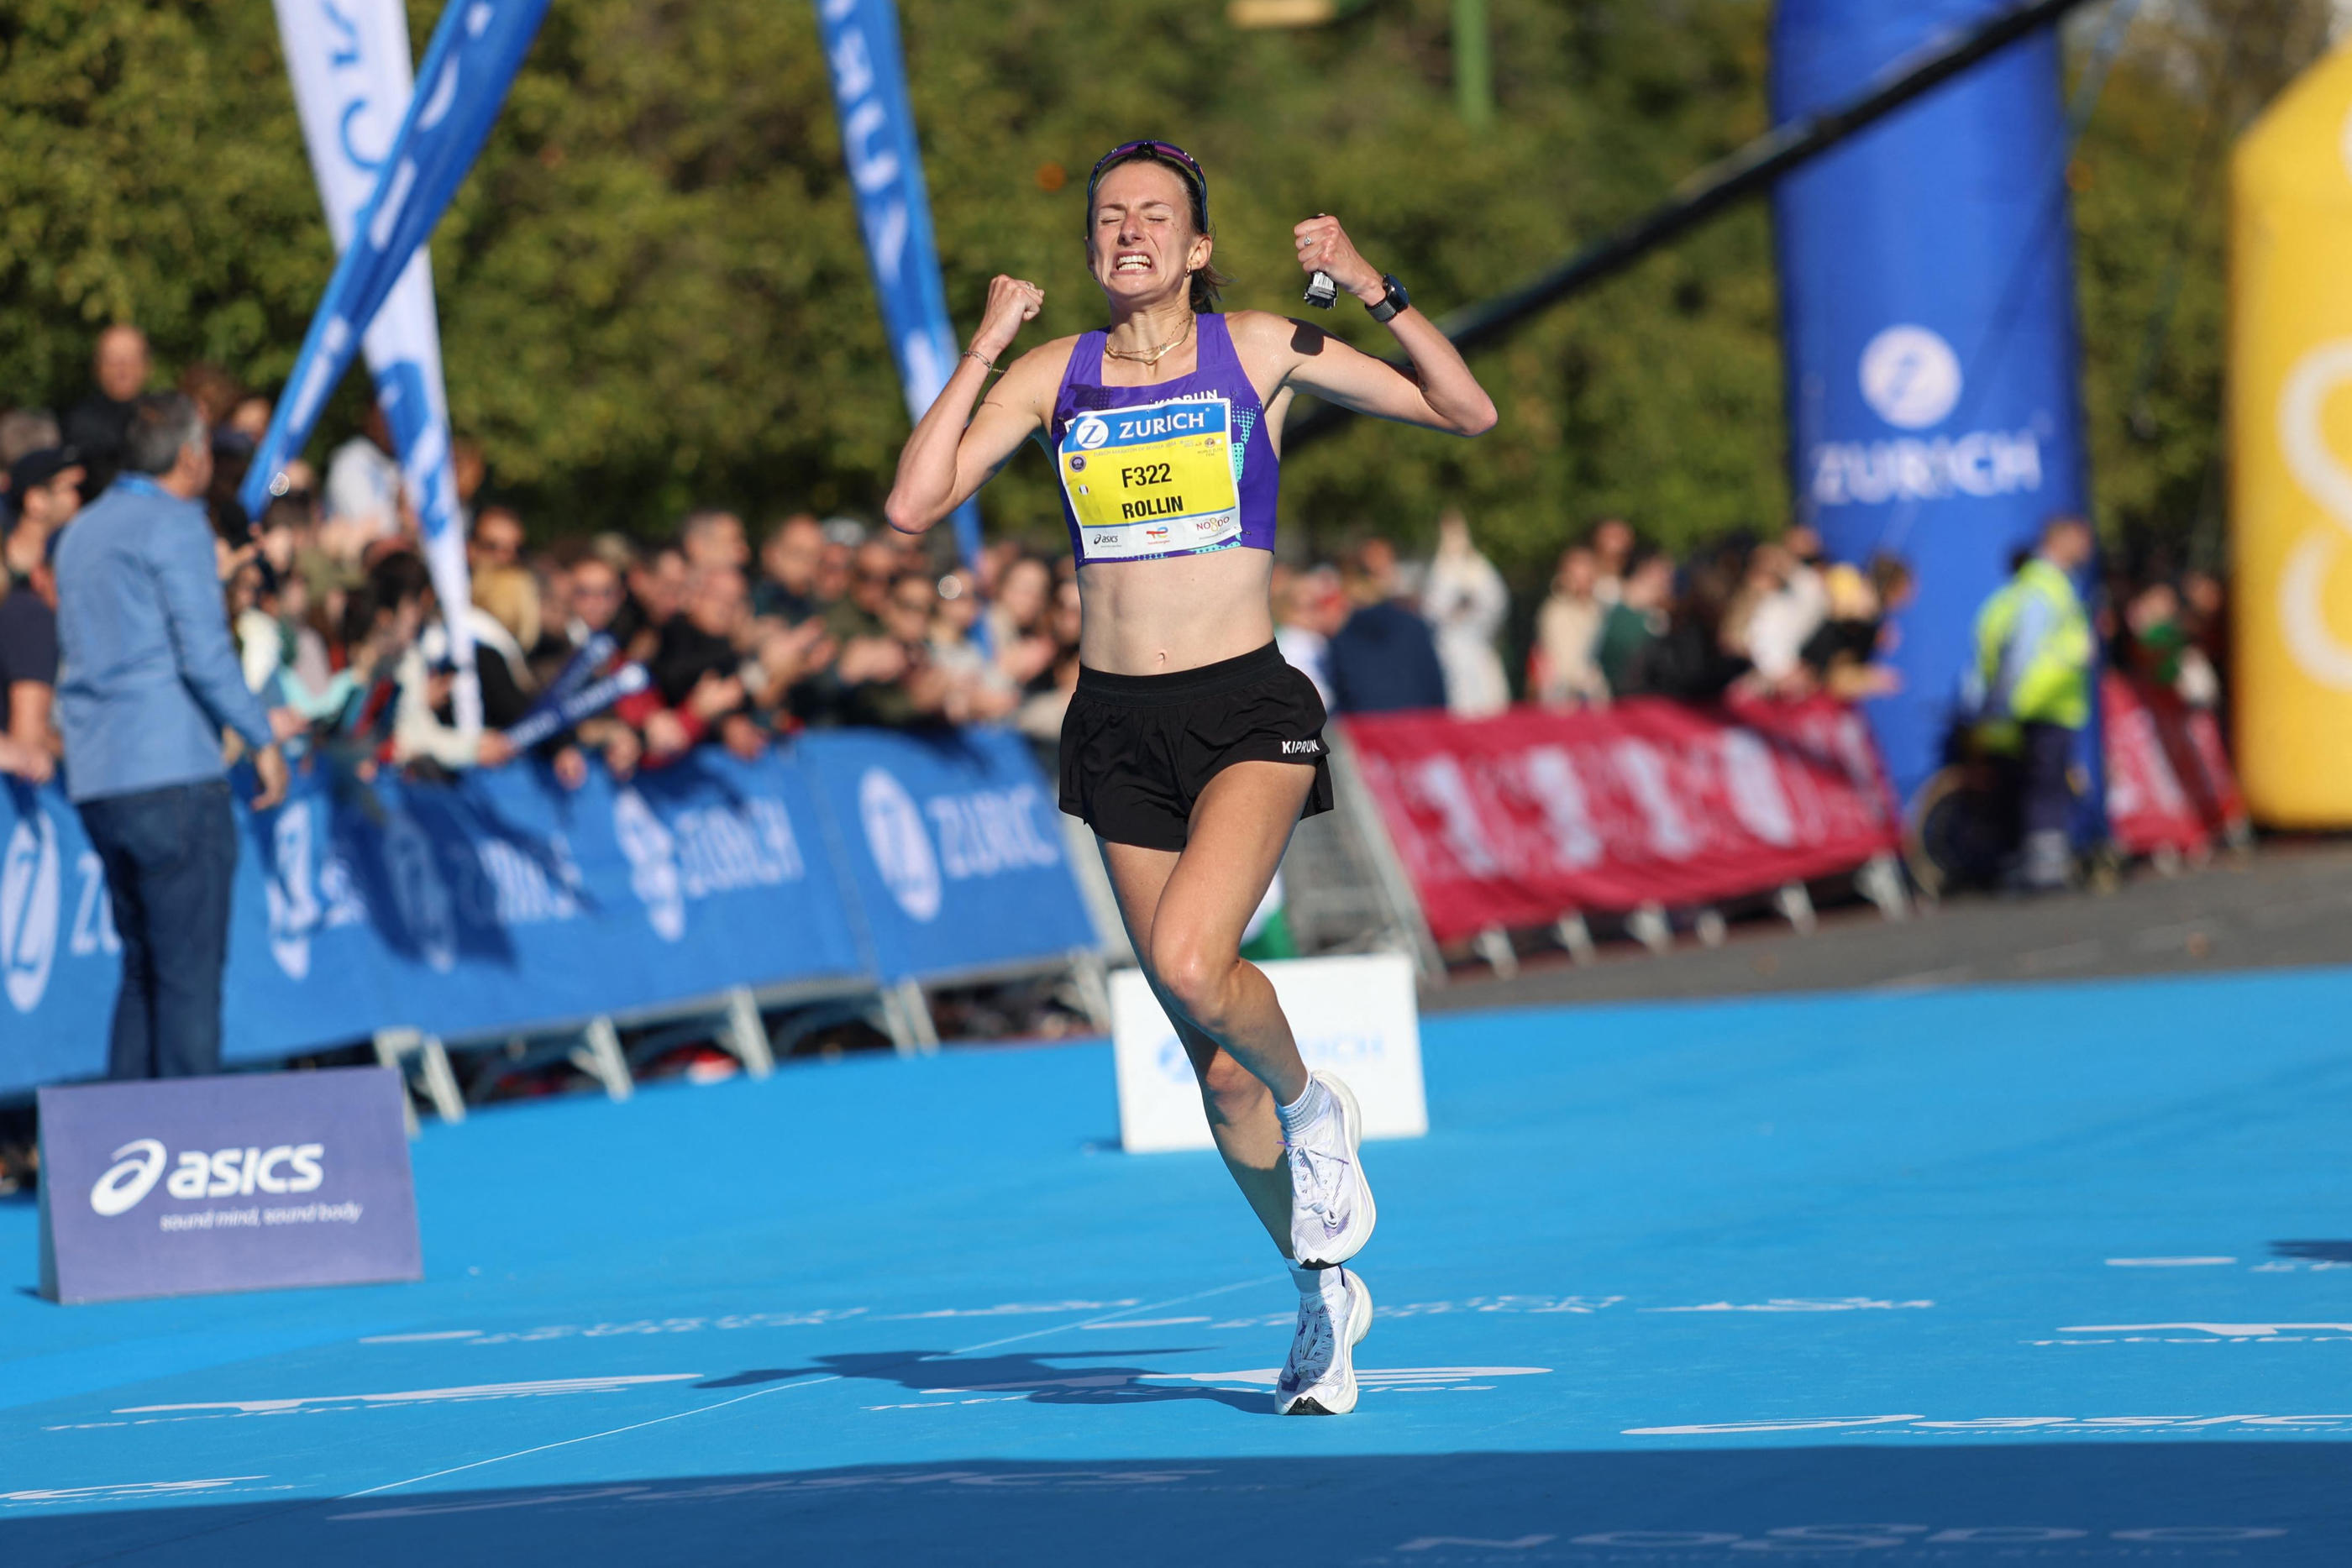 Méline Rollin a battu le record du France de marathon de 10 secondes. Un véritable exploit. MAXPPP